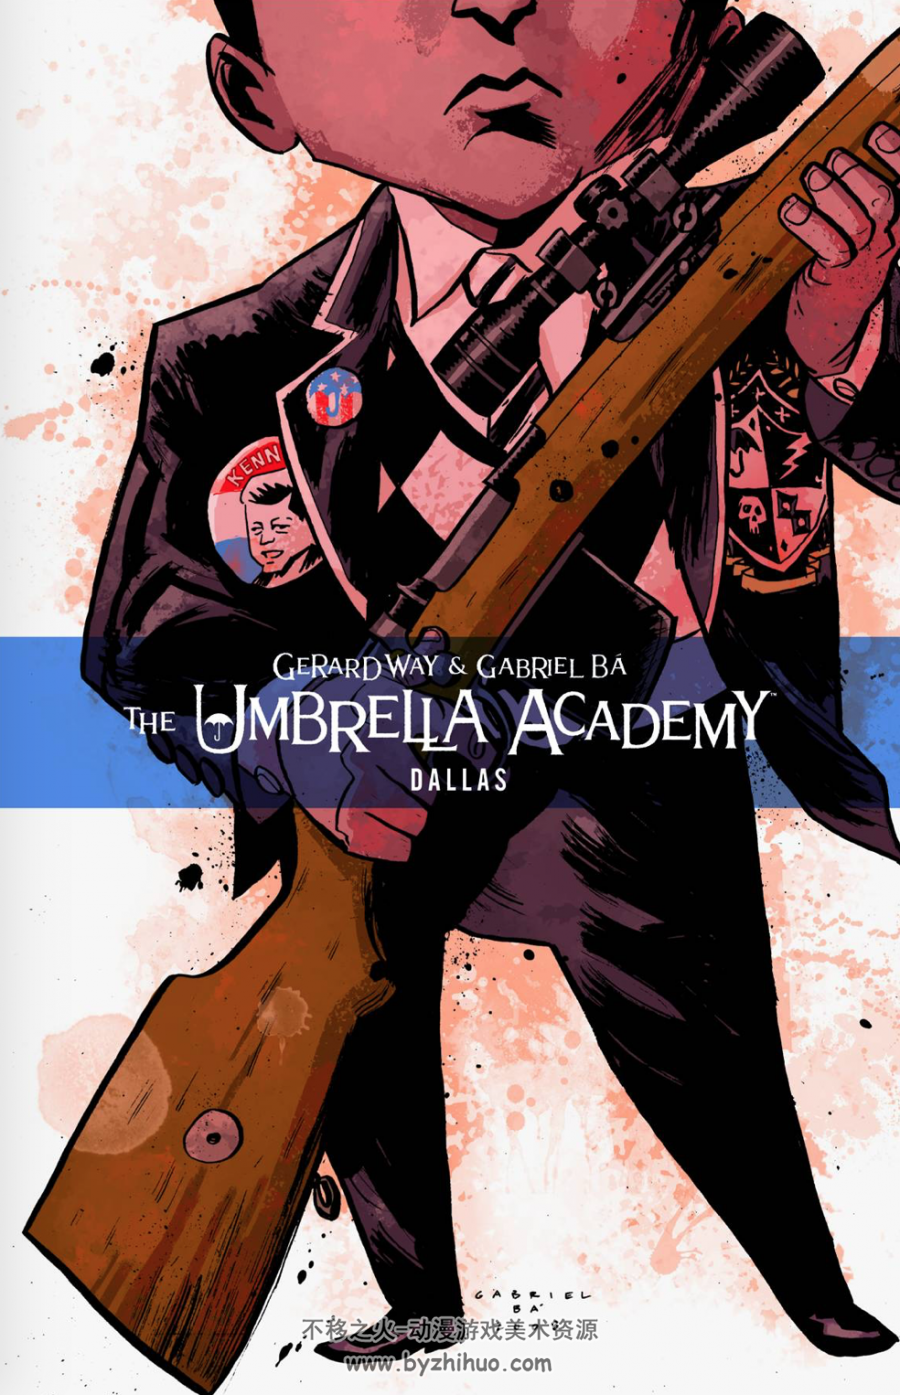 伞学院 The Umbrella Academy 漫画合集英文分享观看